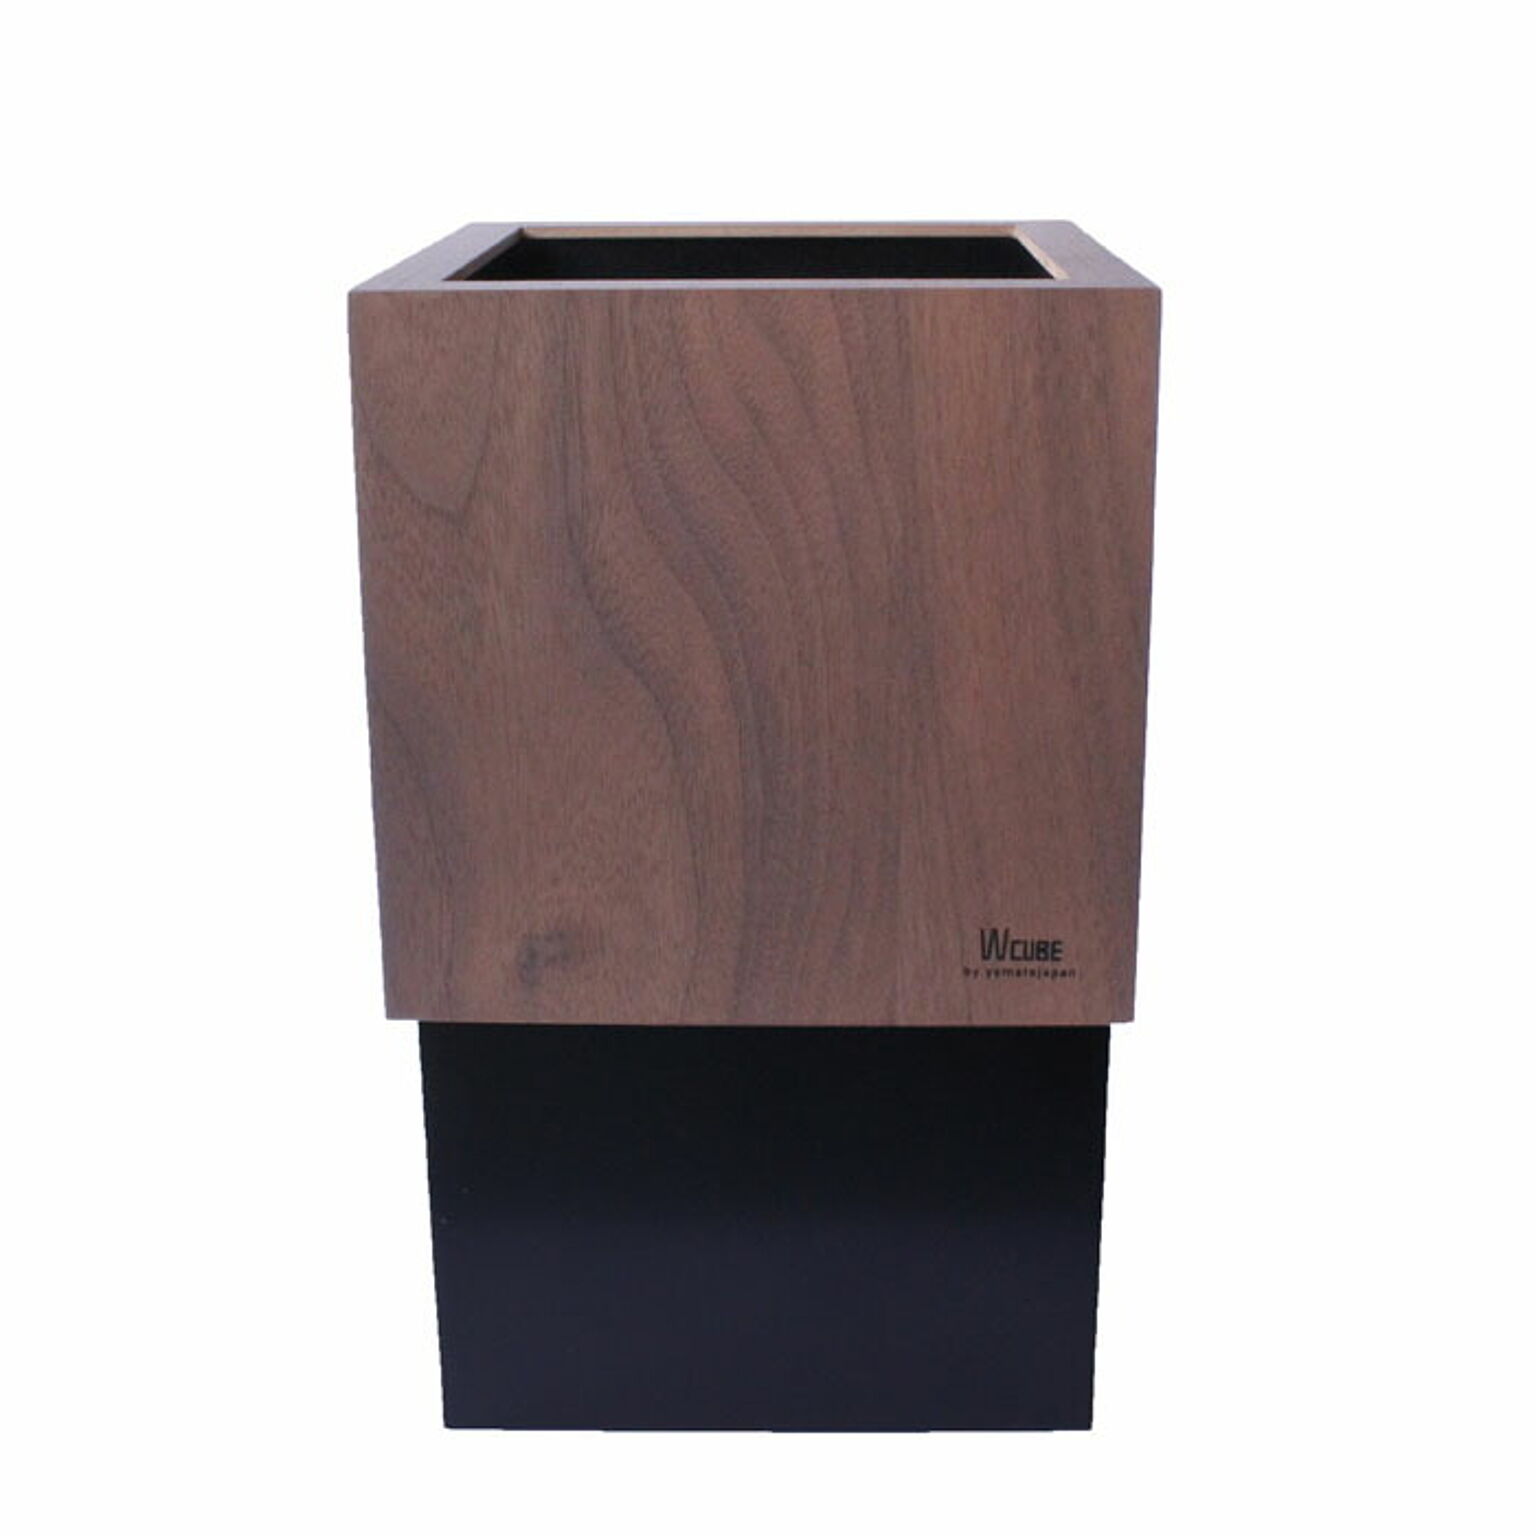 ゴミ箱 ダストボックス 北欧 ごみ箱 日本製 木製 10L ウォールナット シンプル 職人の手作り リビング W CUBE ヤマト工芸